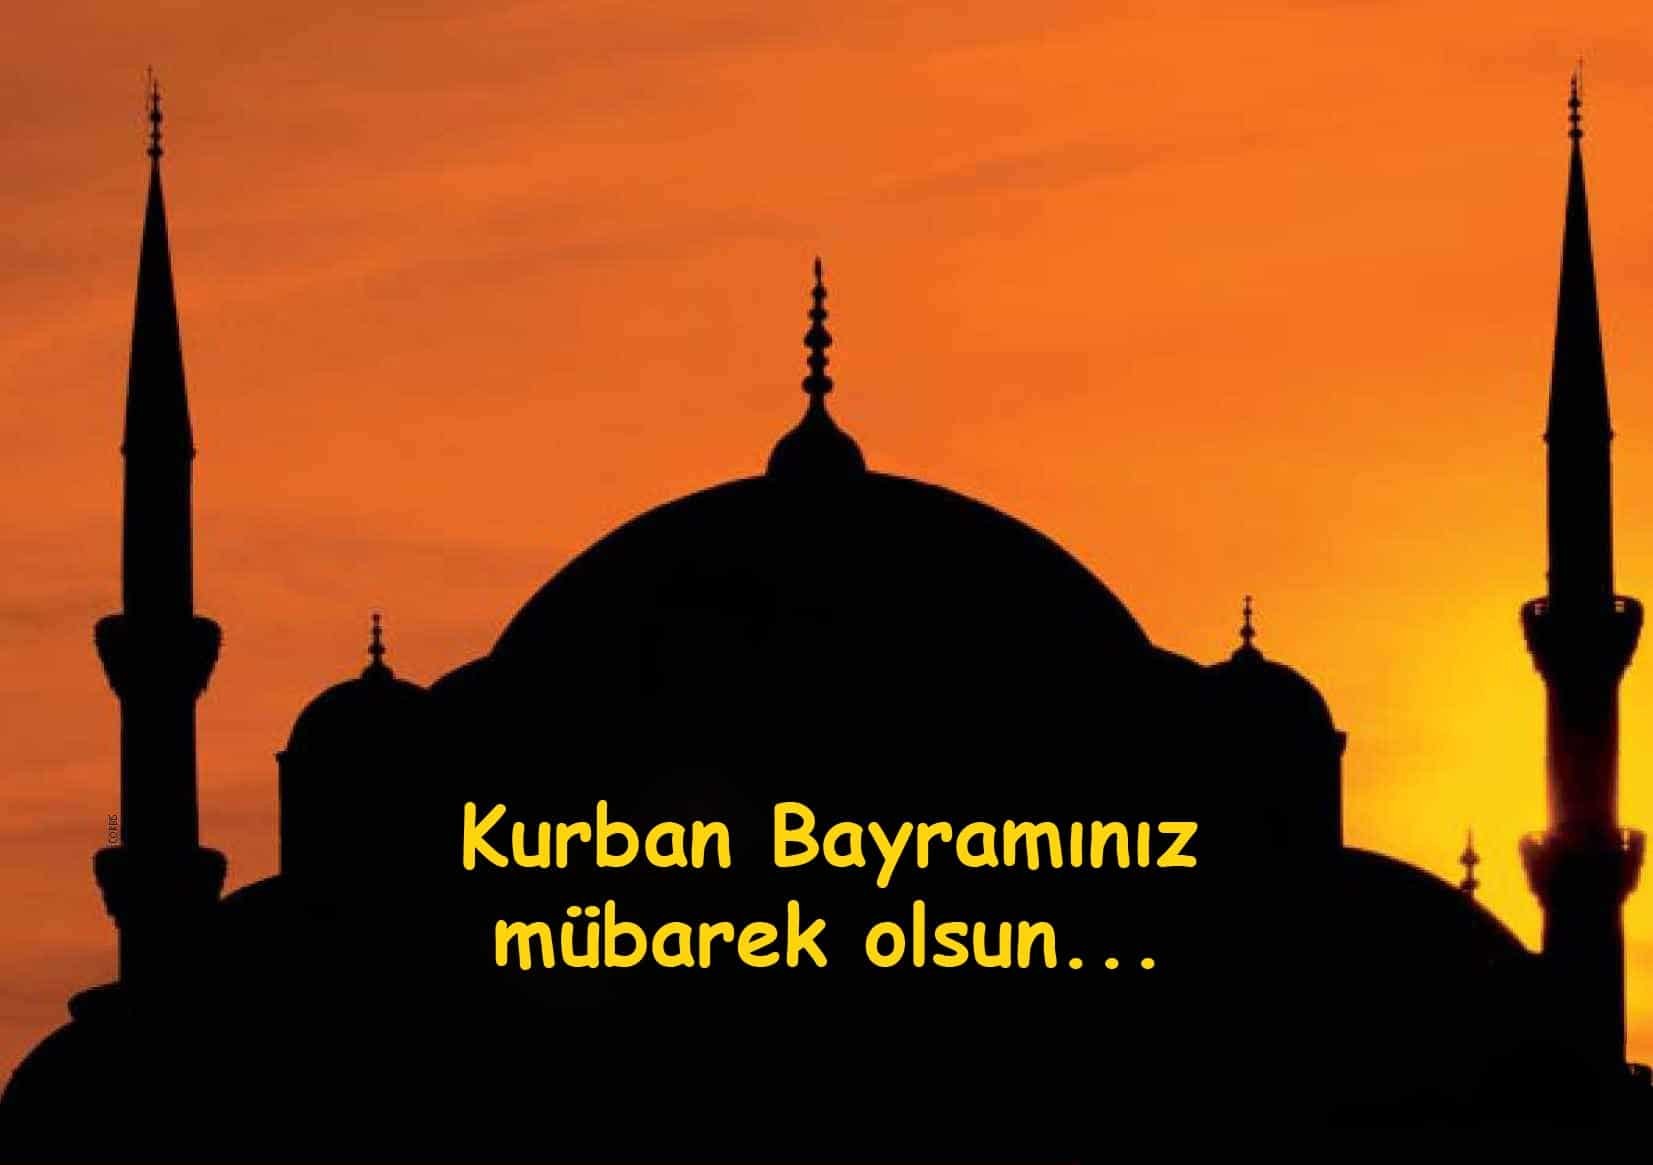 kurban-bayrami-2015.jpg